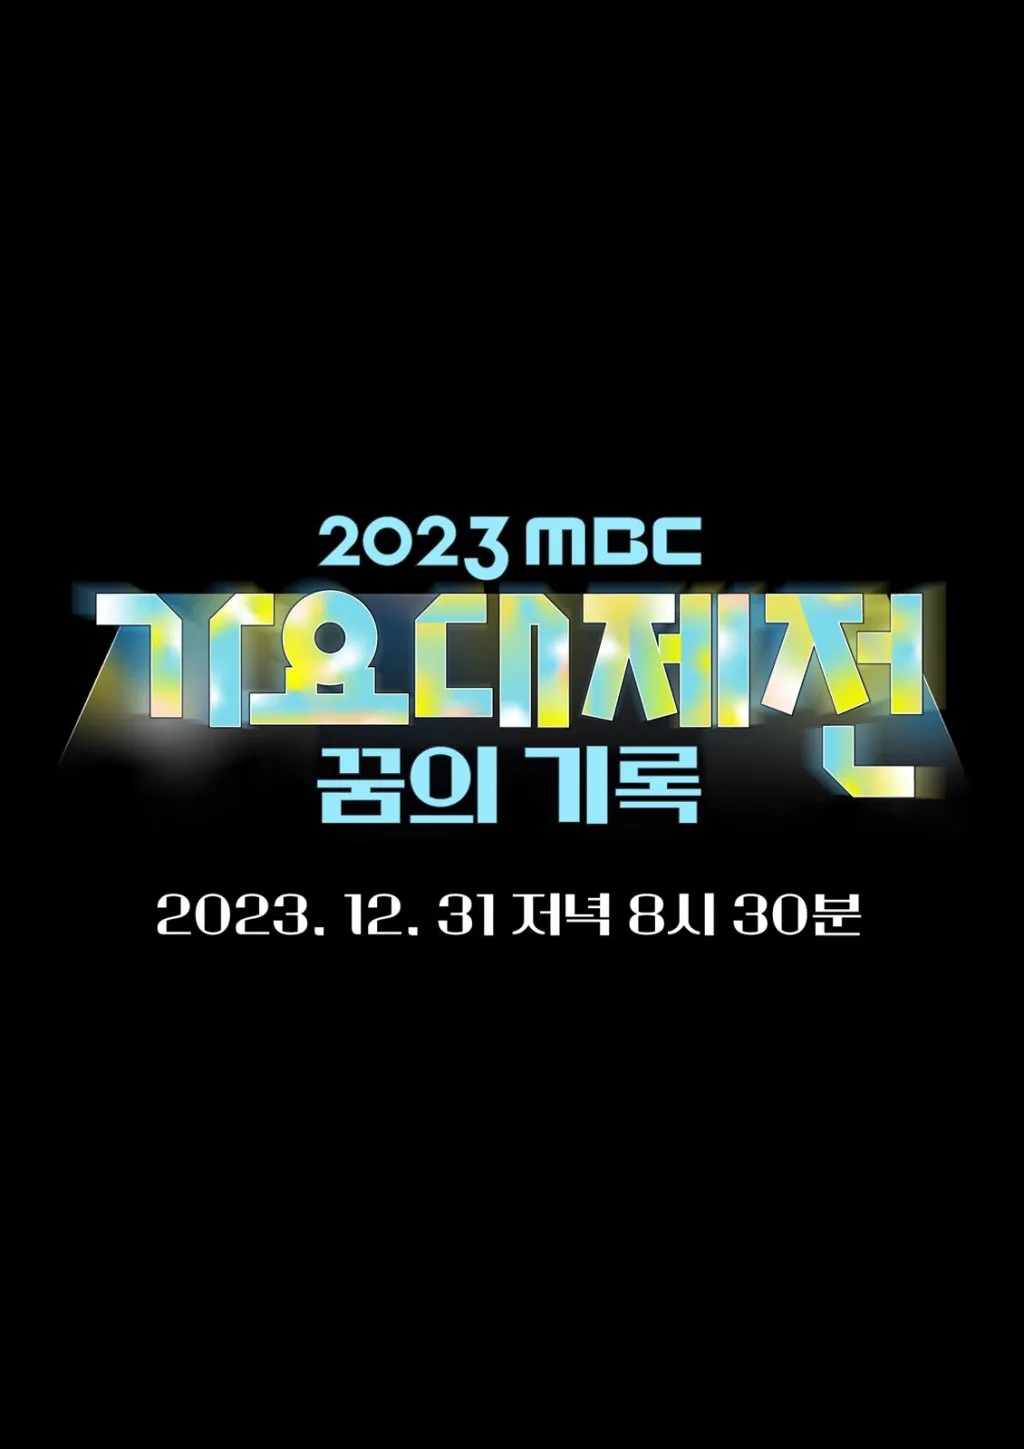 Revelada a programação de artistas do 2023 MBC Gayo Daejejeon: SHINee, Stray Kids, aespa e mais para ocupar o centro do palco com apresentações épicas!